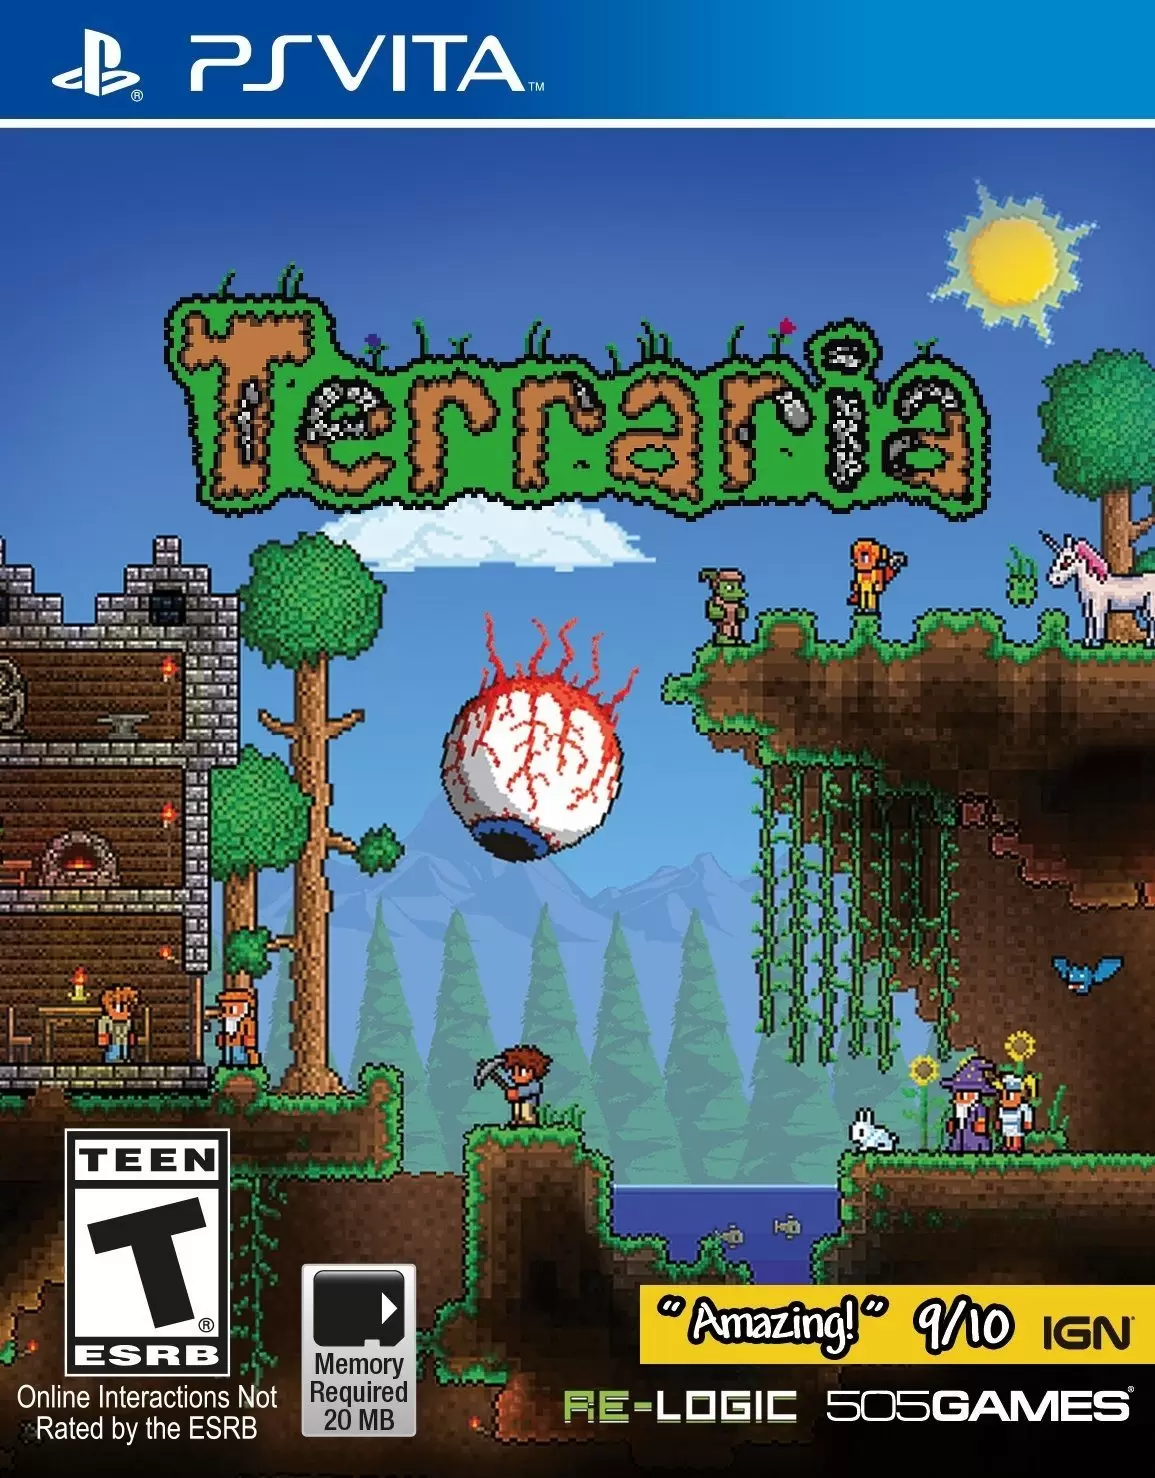 PS Vita Games - Terraria